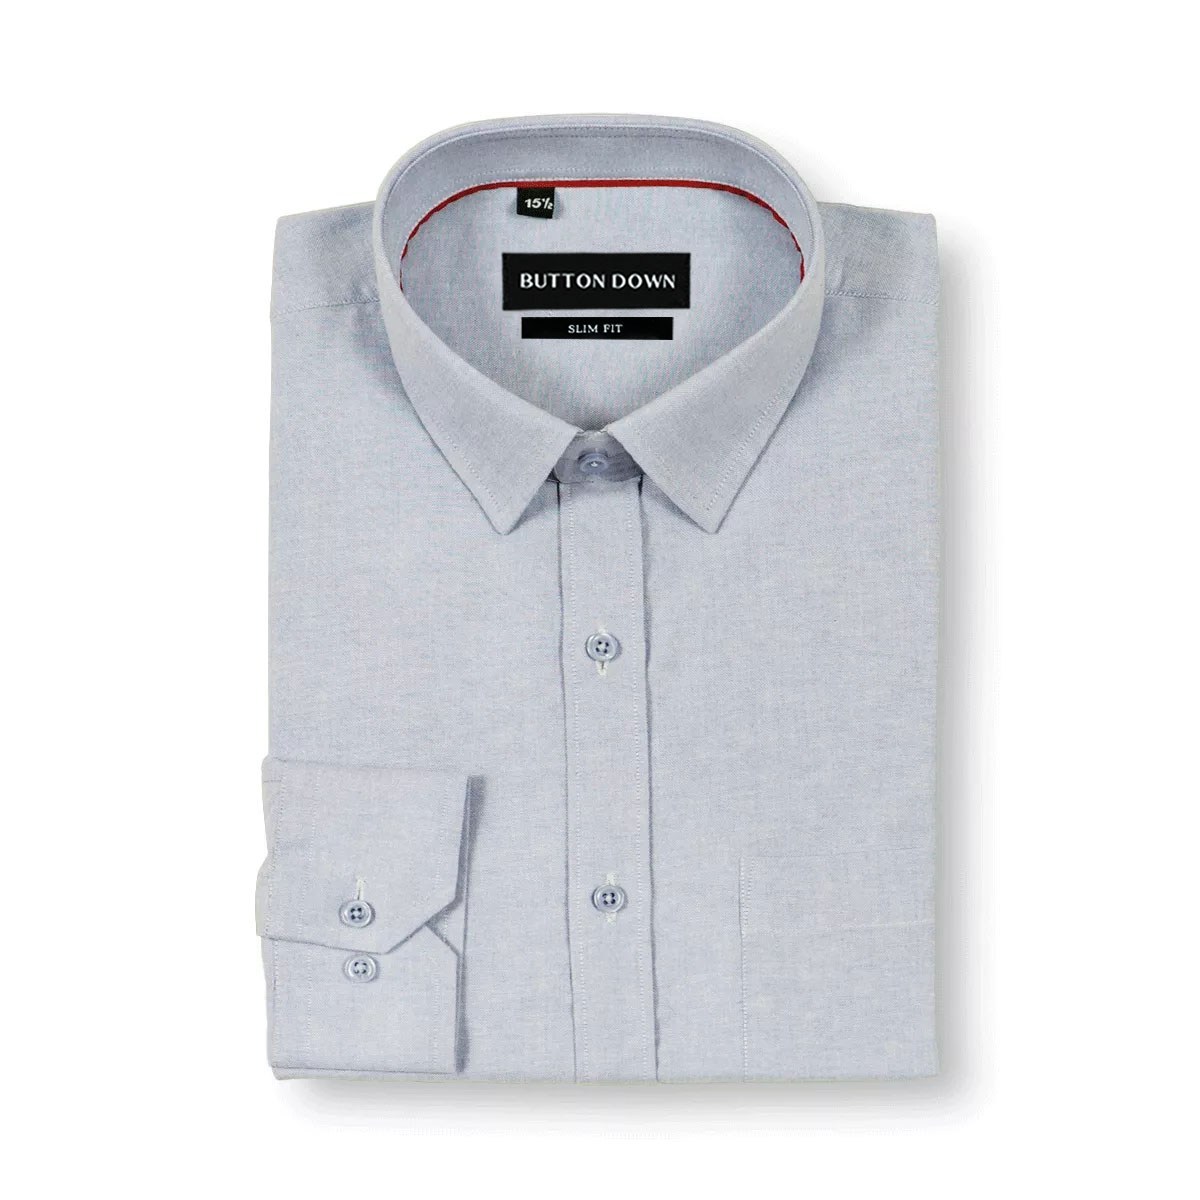 Edenrobe Men's White Shirt Plain - EMTSB21-054